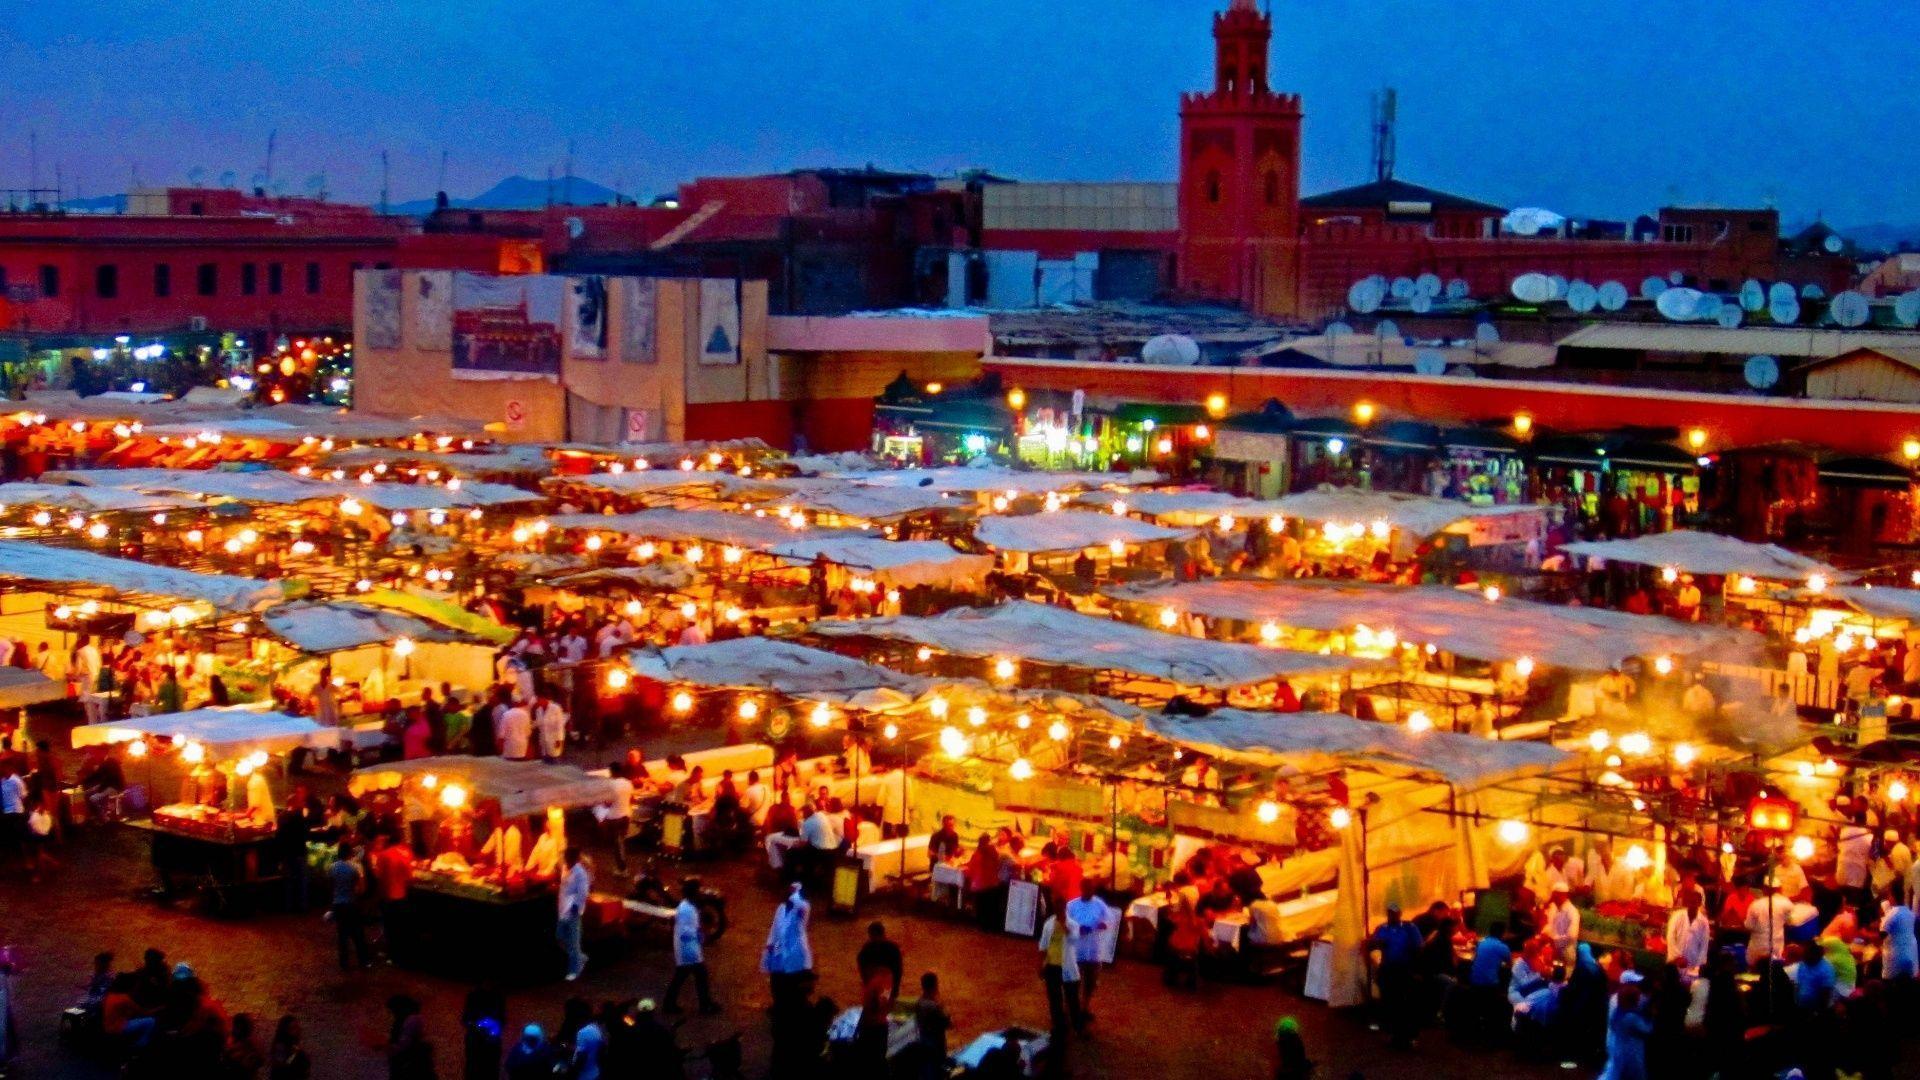 Moroccan Market, Marrakech, Morocco, Markets, Bazzar